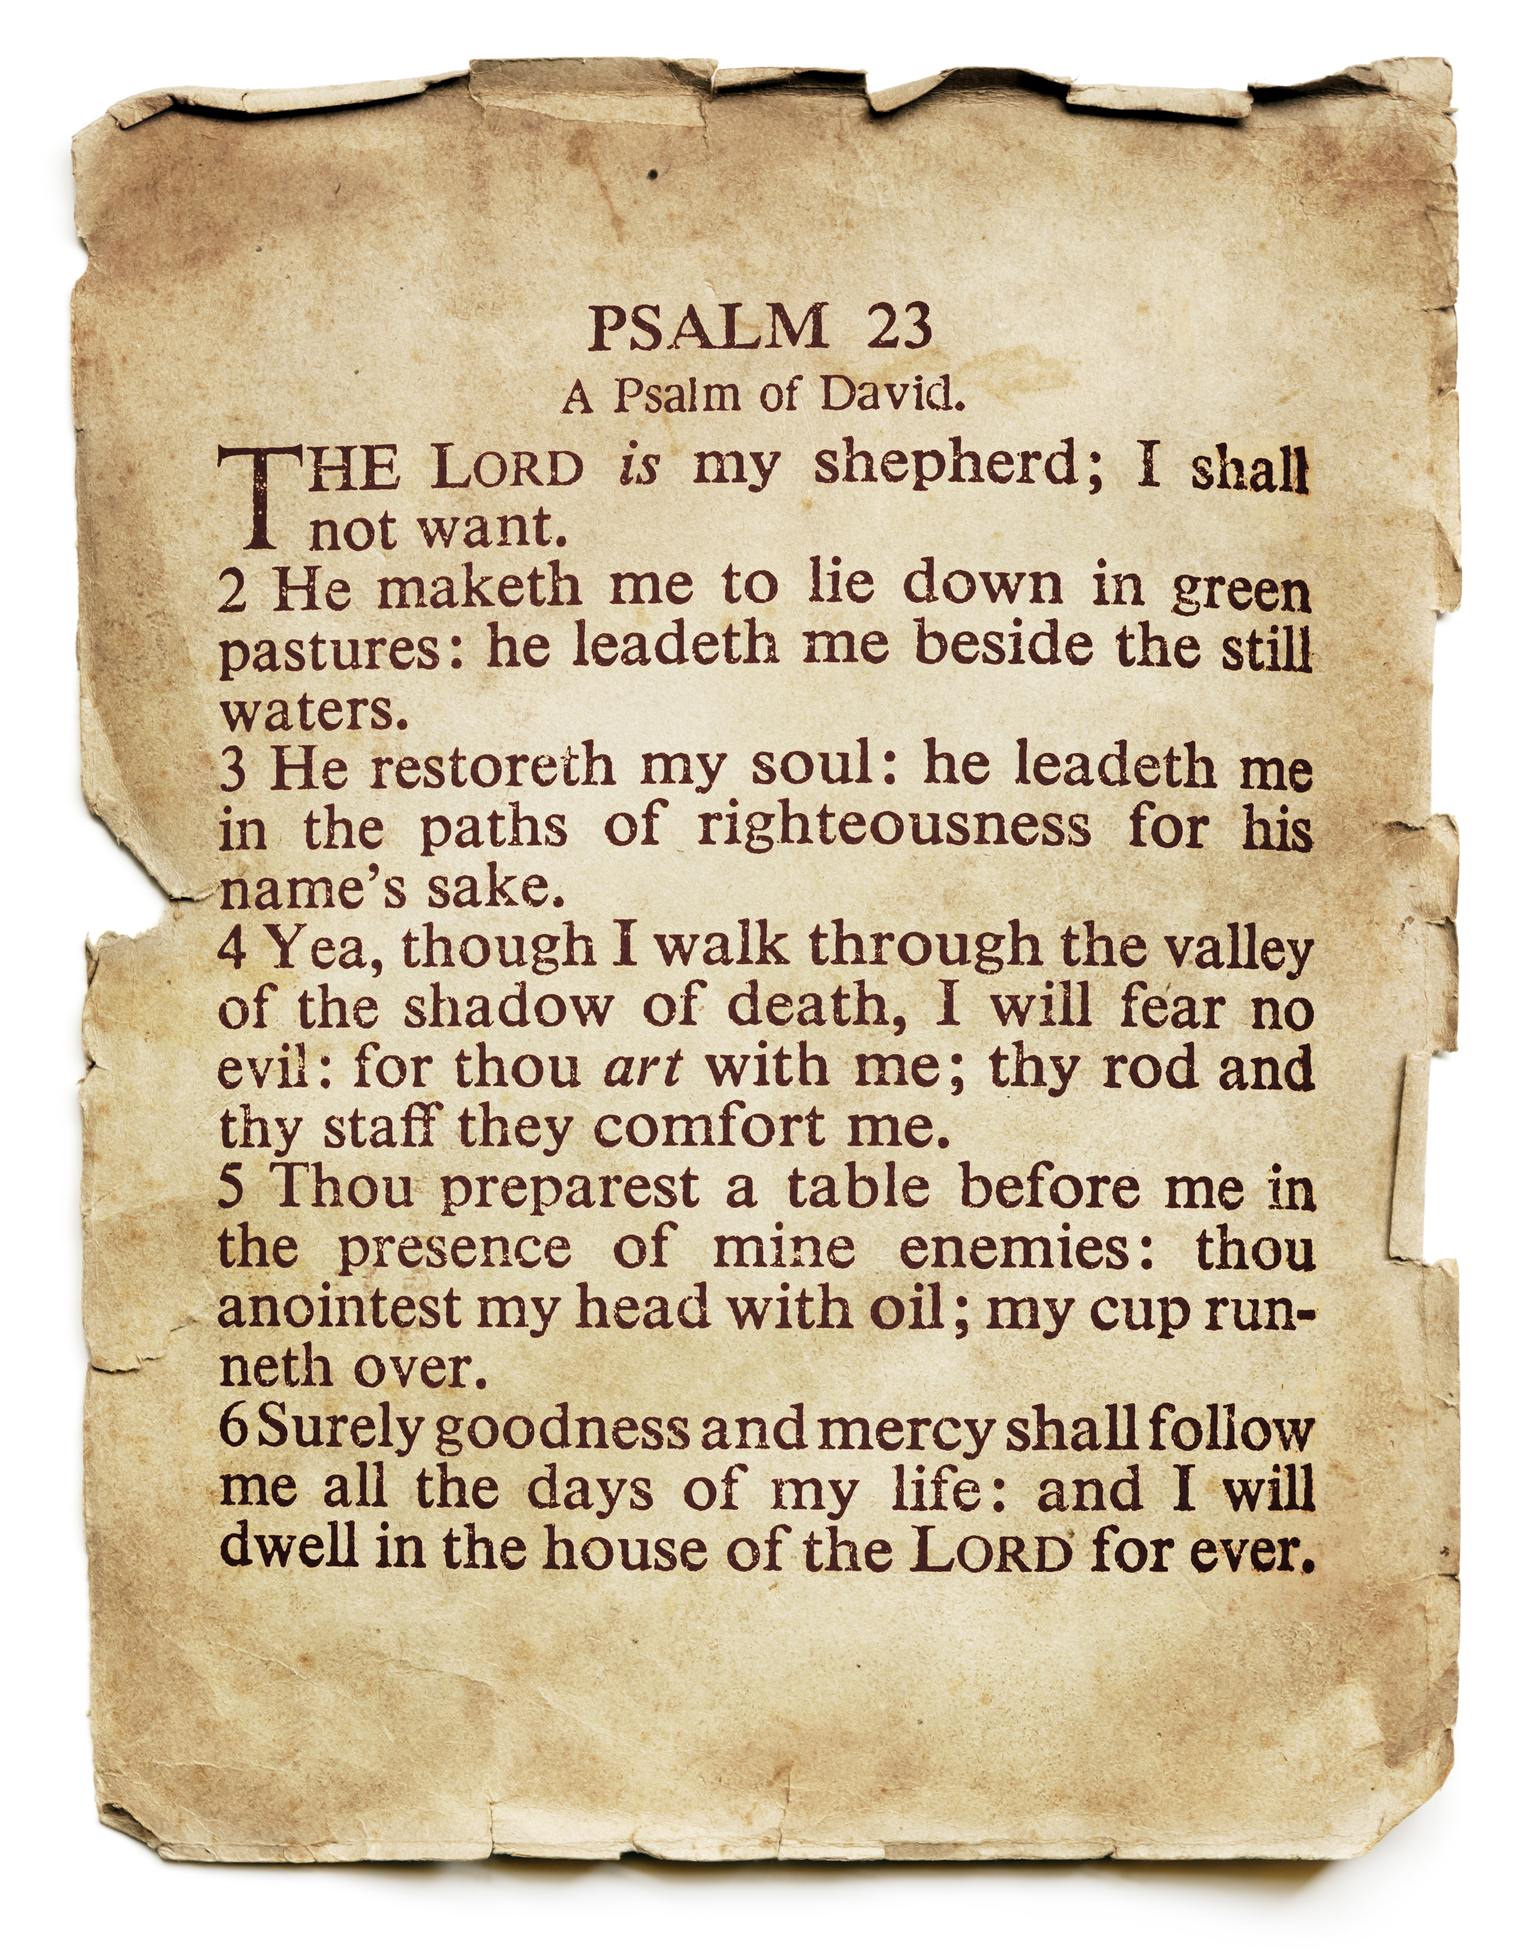 Psalm 23 in Pop Culture